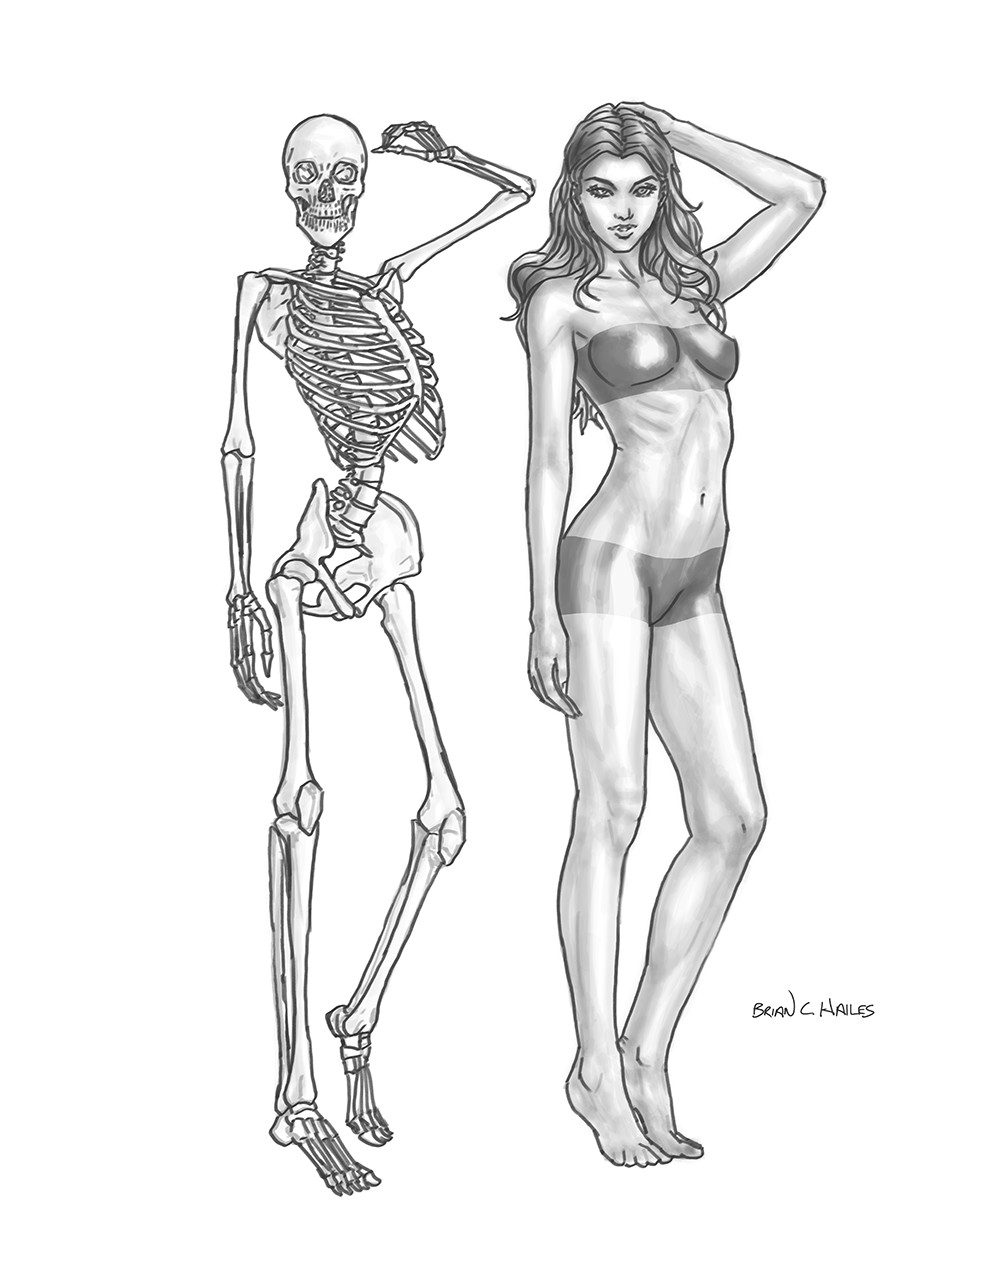 Artstation - Female Skeleton Drawing. 